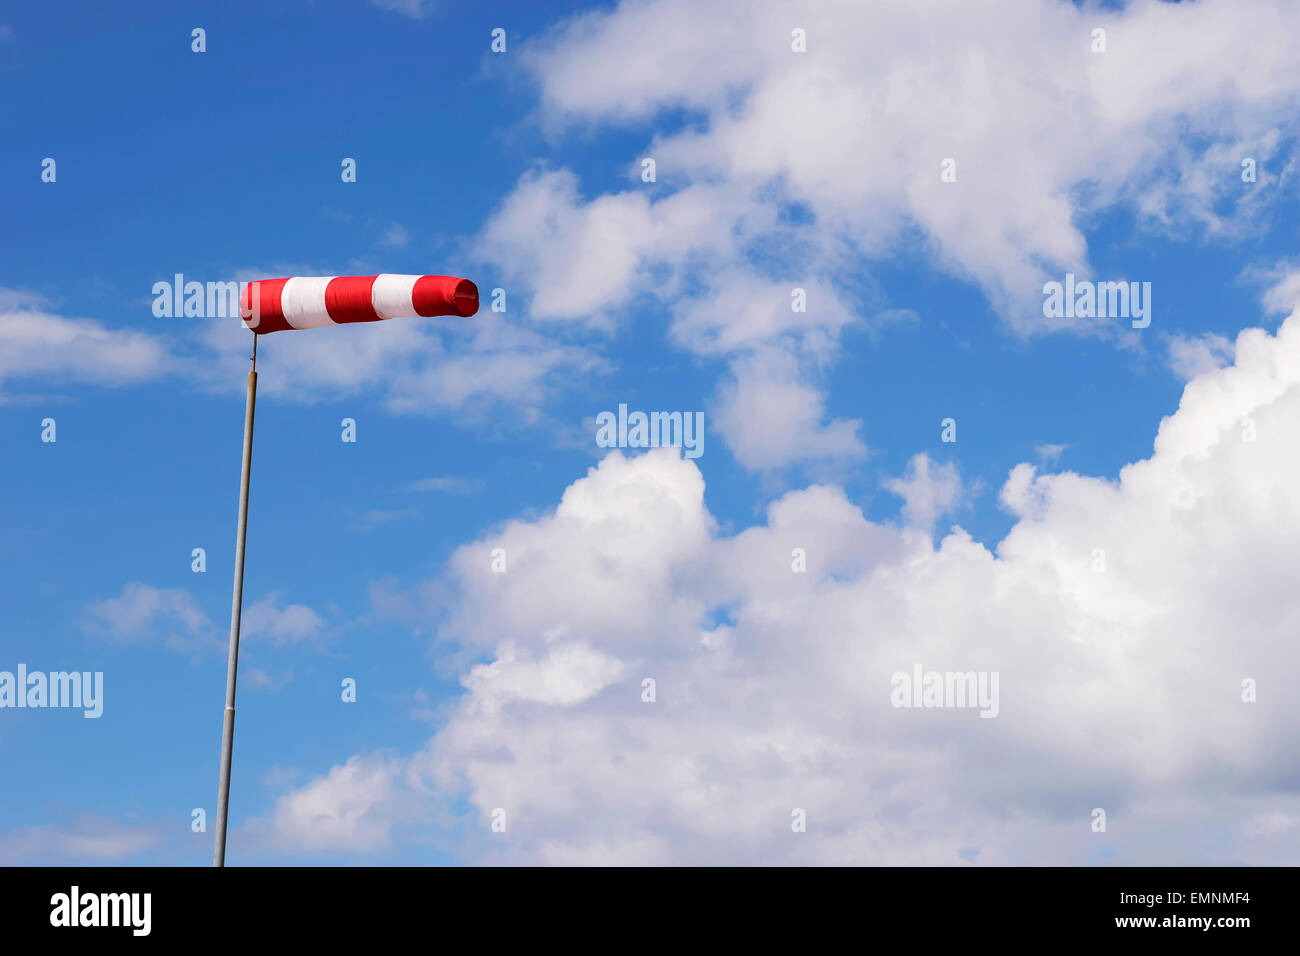 Image d'une girouette blanc rouge sur fond de ciel bleu avec des nuages blancs Banque D'Images